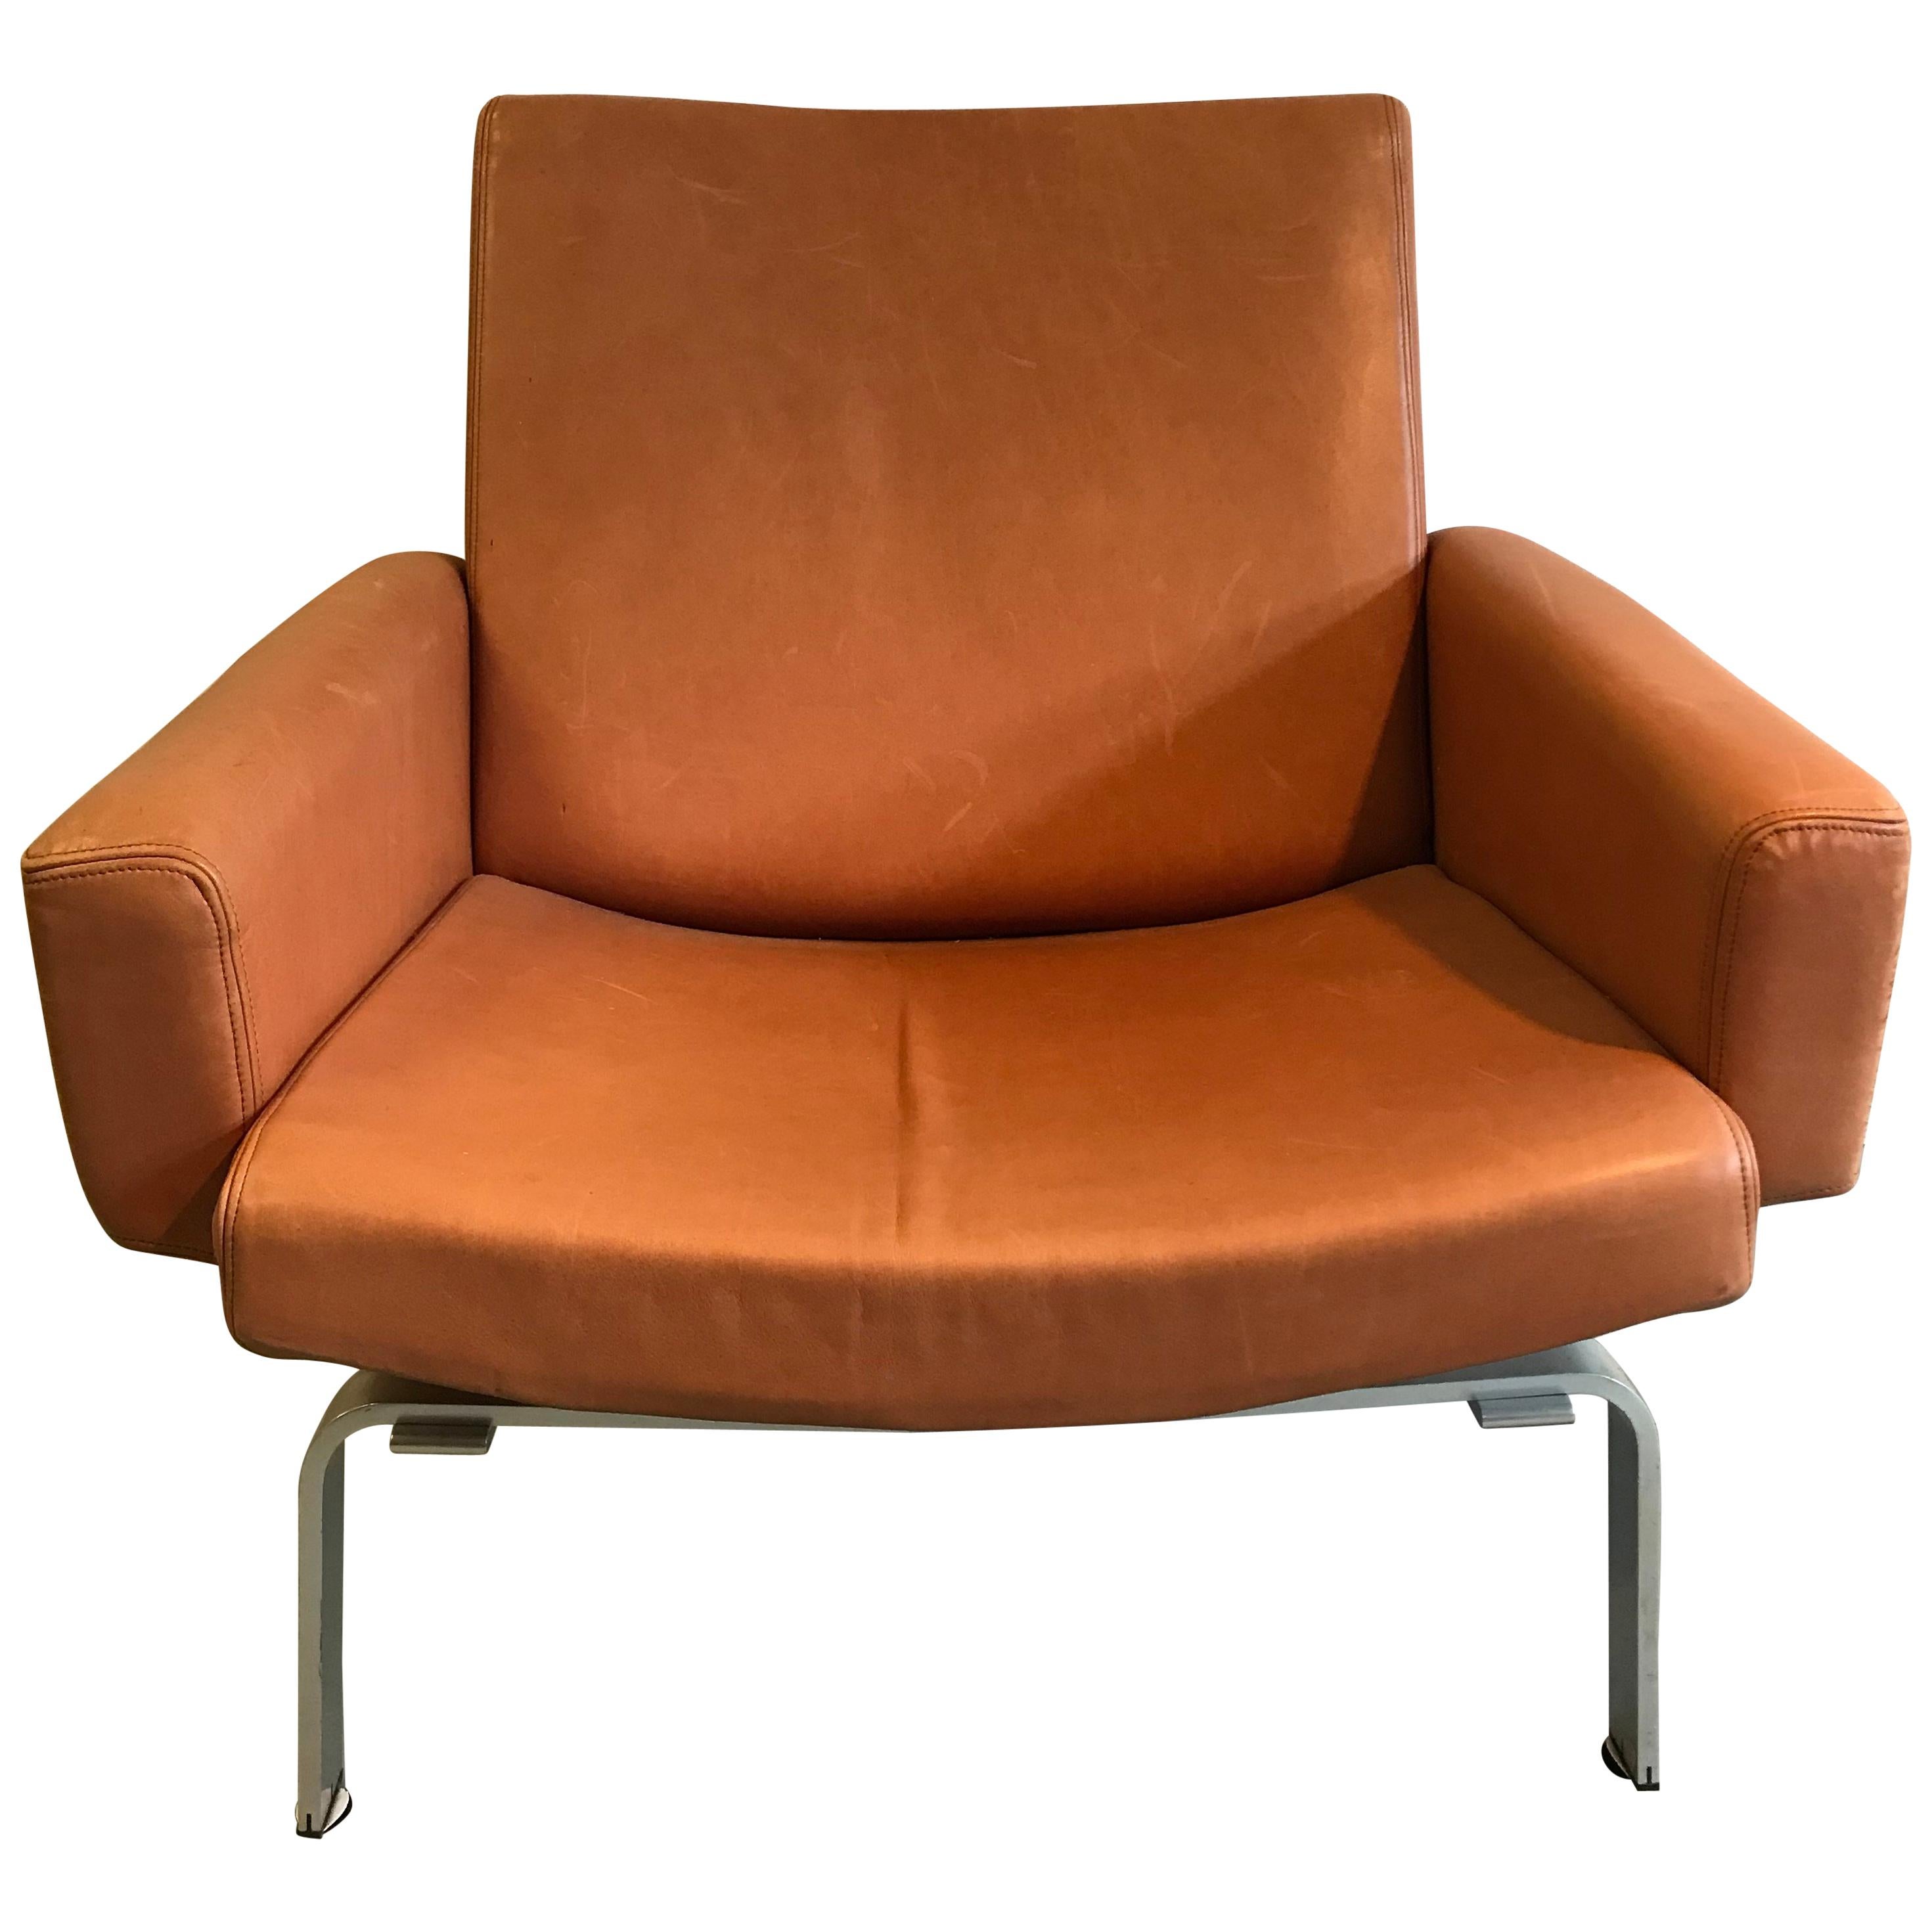 Rare Jorgen Hoj Lounge Chair Vitsoe Design For Sale